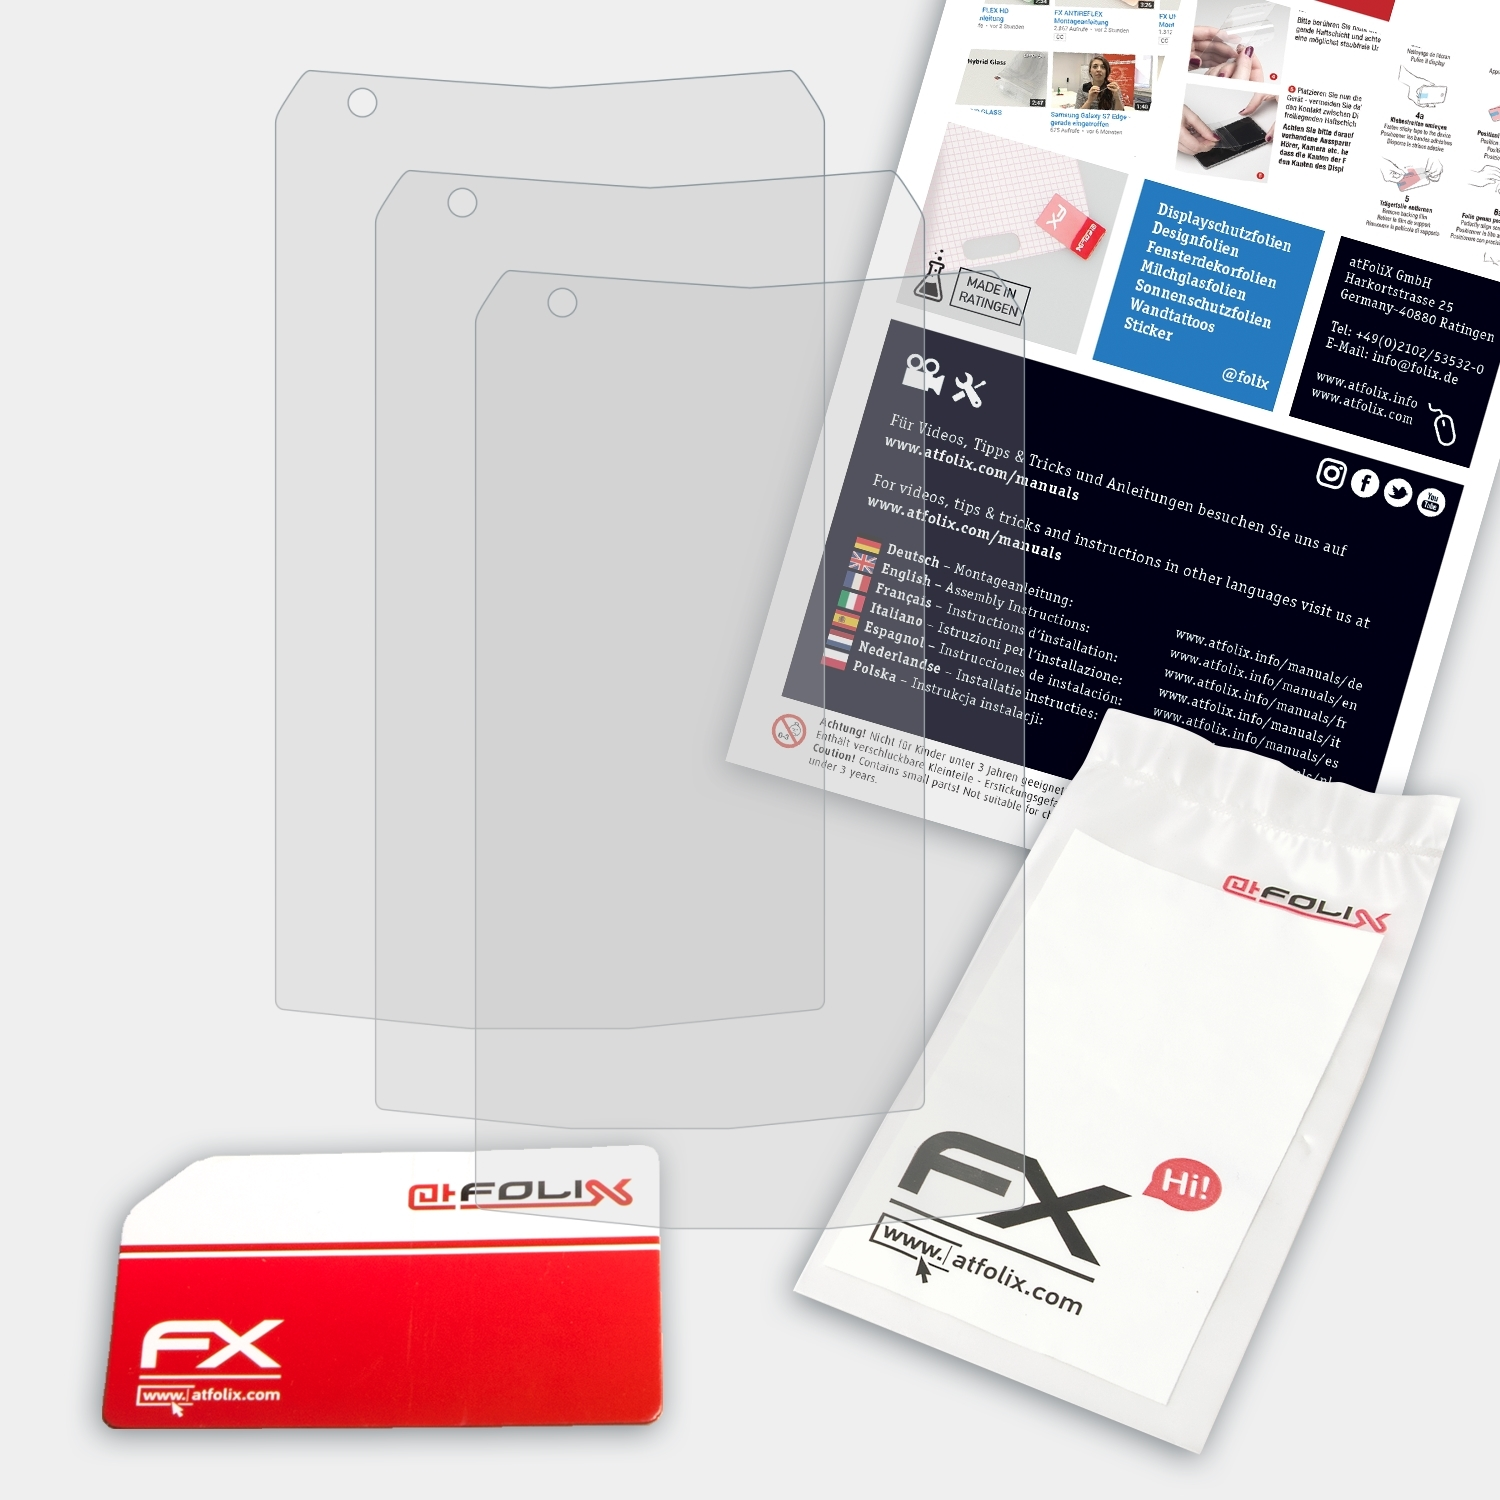 FX-Antireflex 3x Displayschutz(für XP7) ATFOLIX Sonim